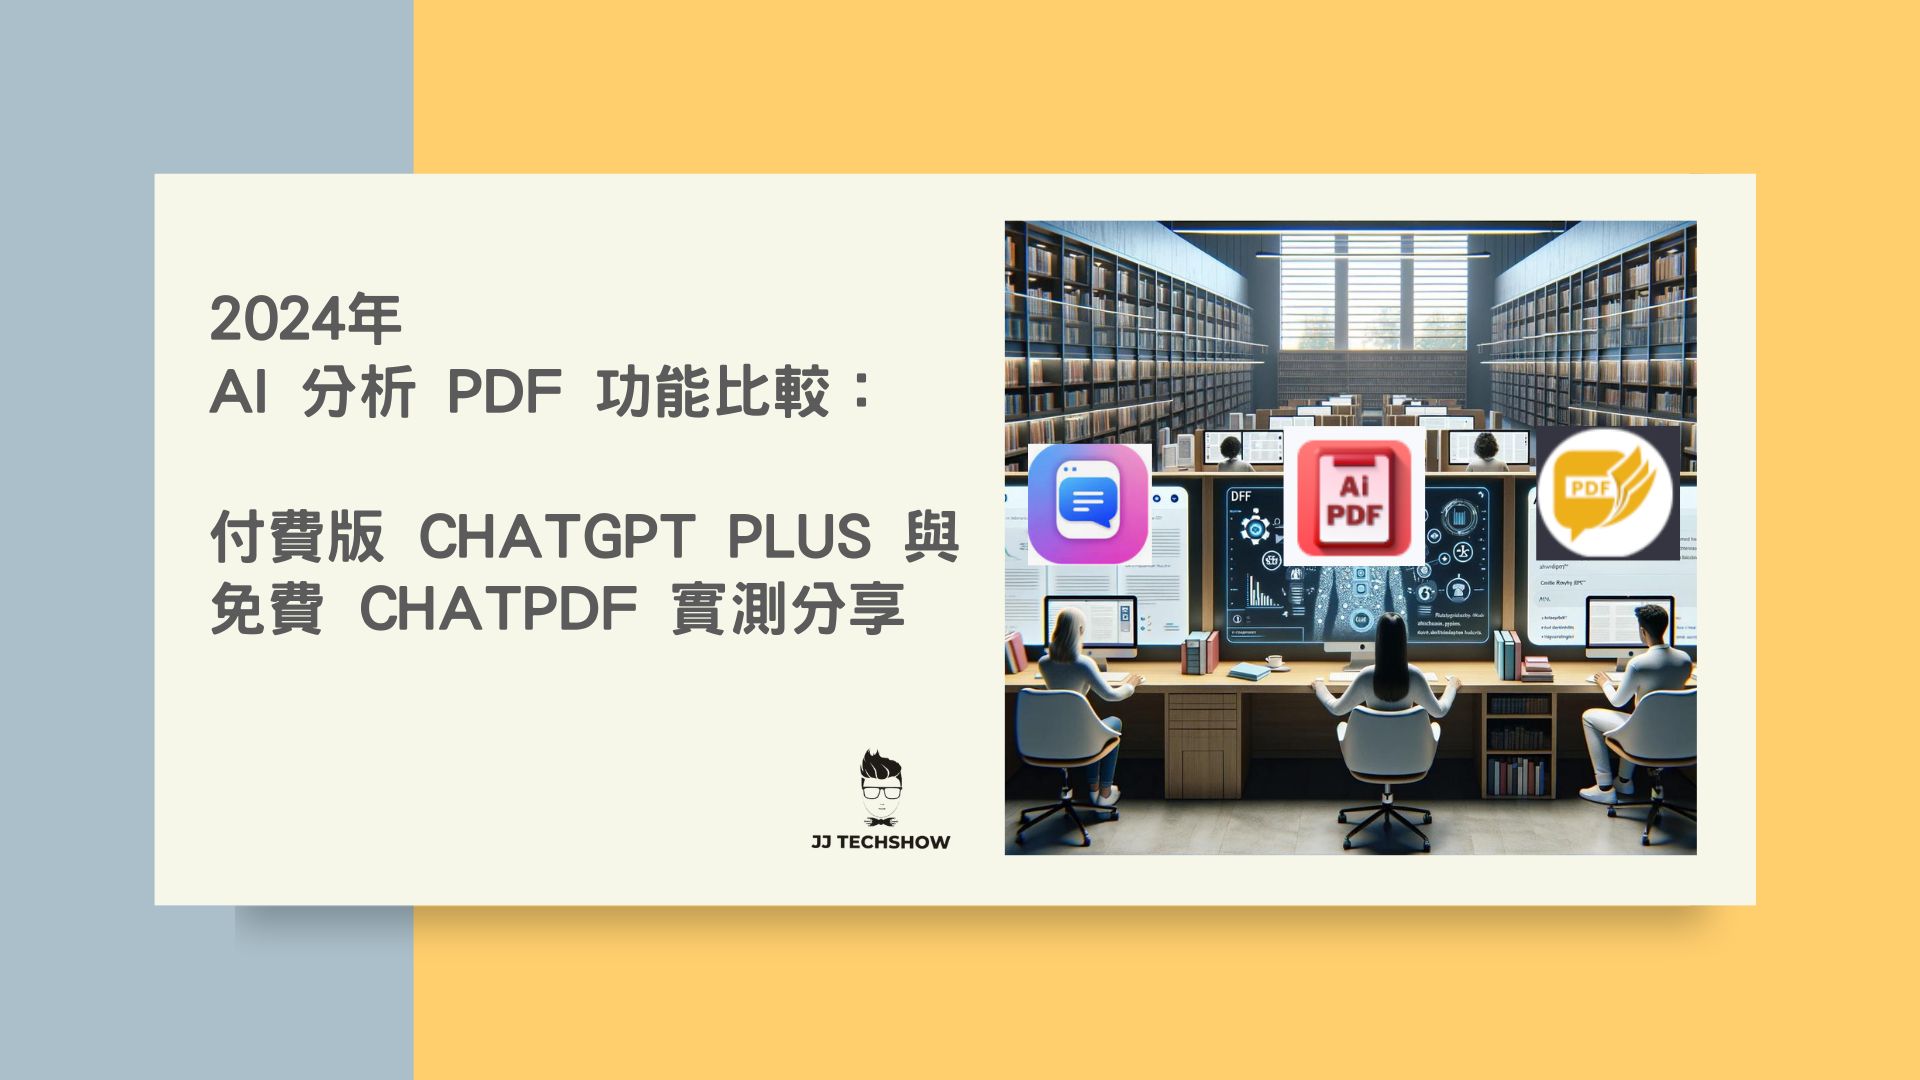 2024年，AI 分析 PDF 功能：付費版 ChatGPT Plus 與免費 ChatPDF 實測分享